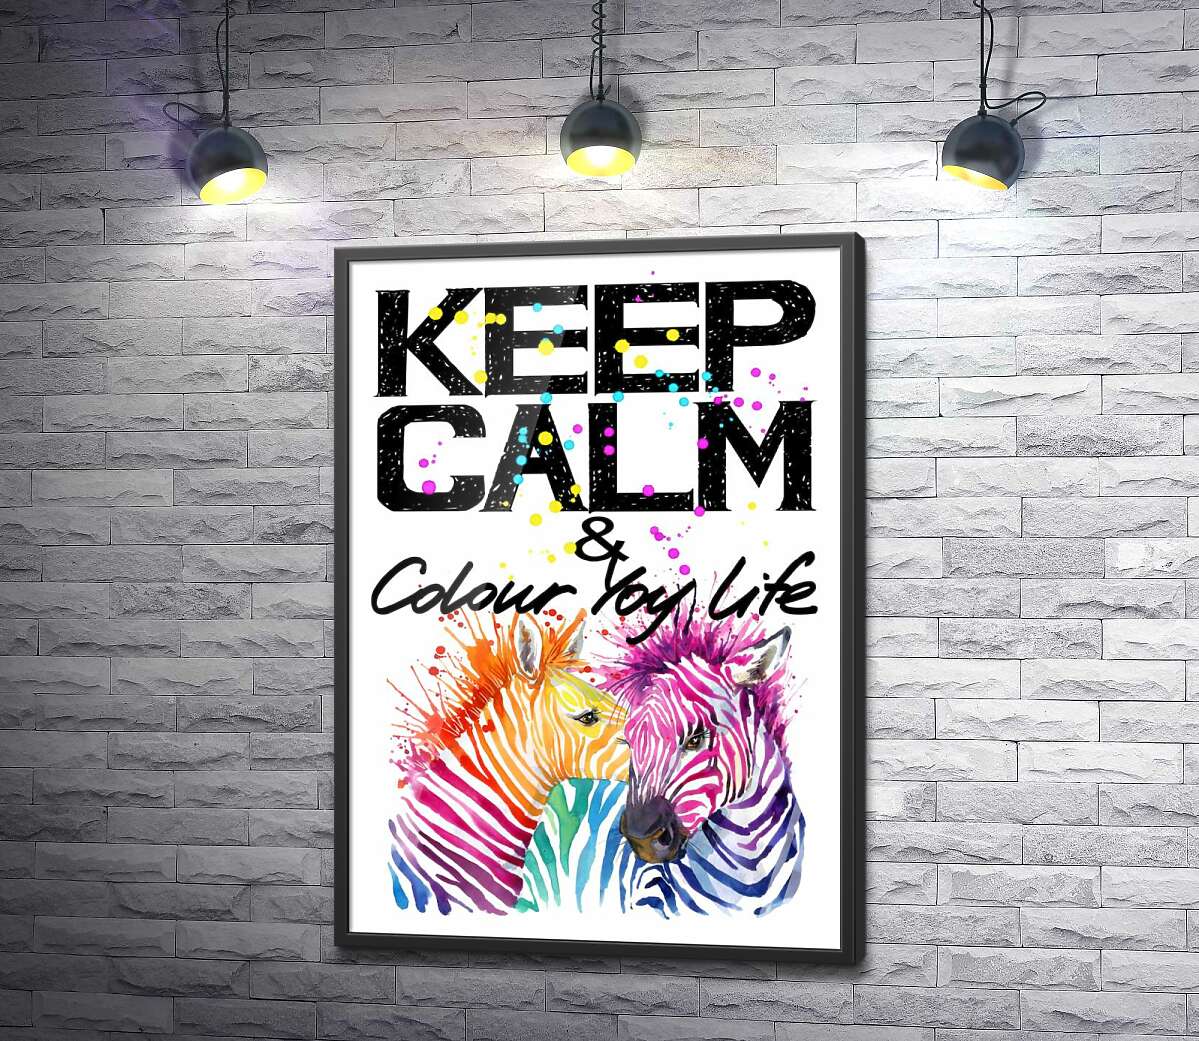 постер Цветные полоски зебр под надписью "keep calm and colour your life"